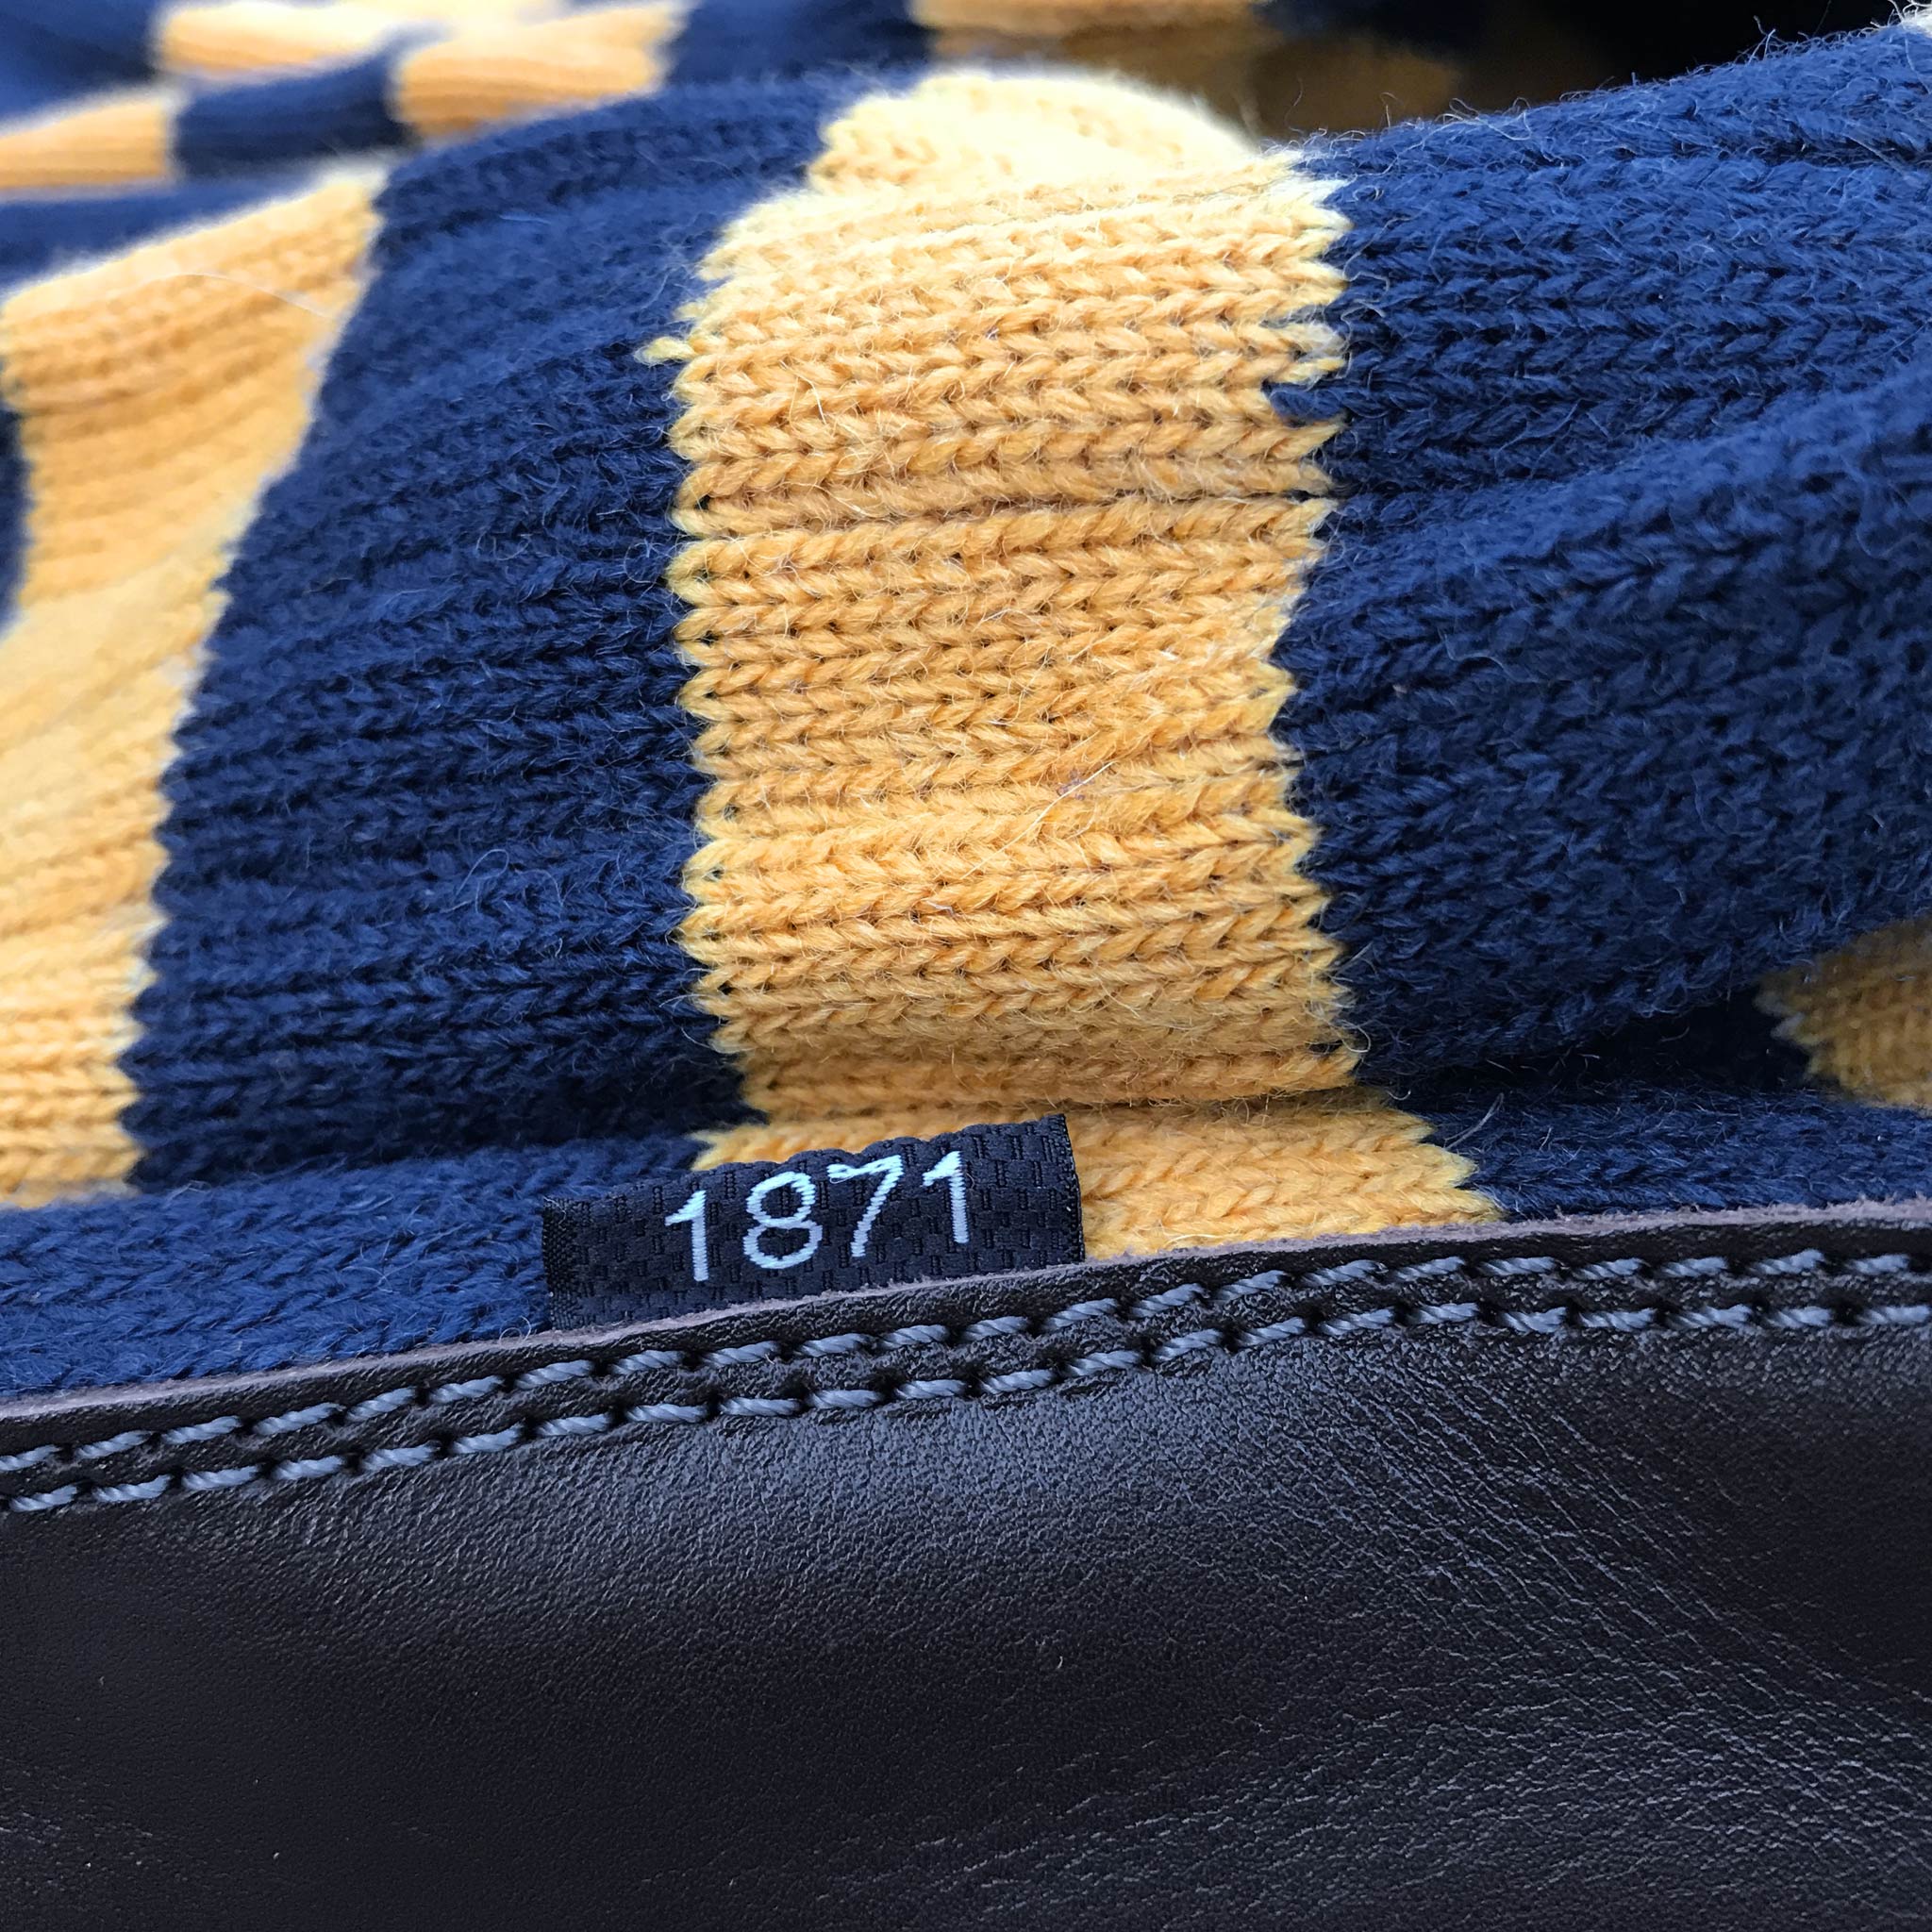 Slipper Sock blue and mustard stripe - closeup